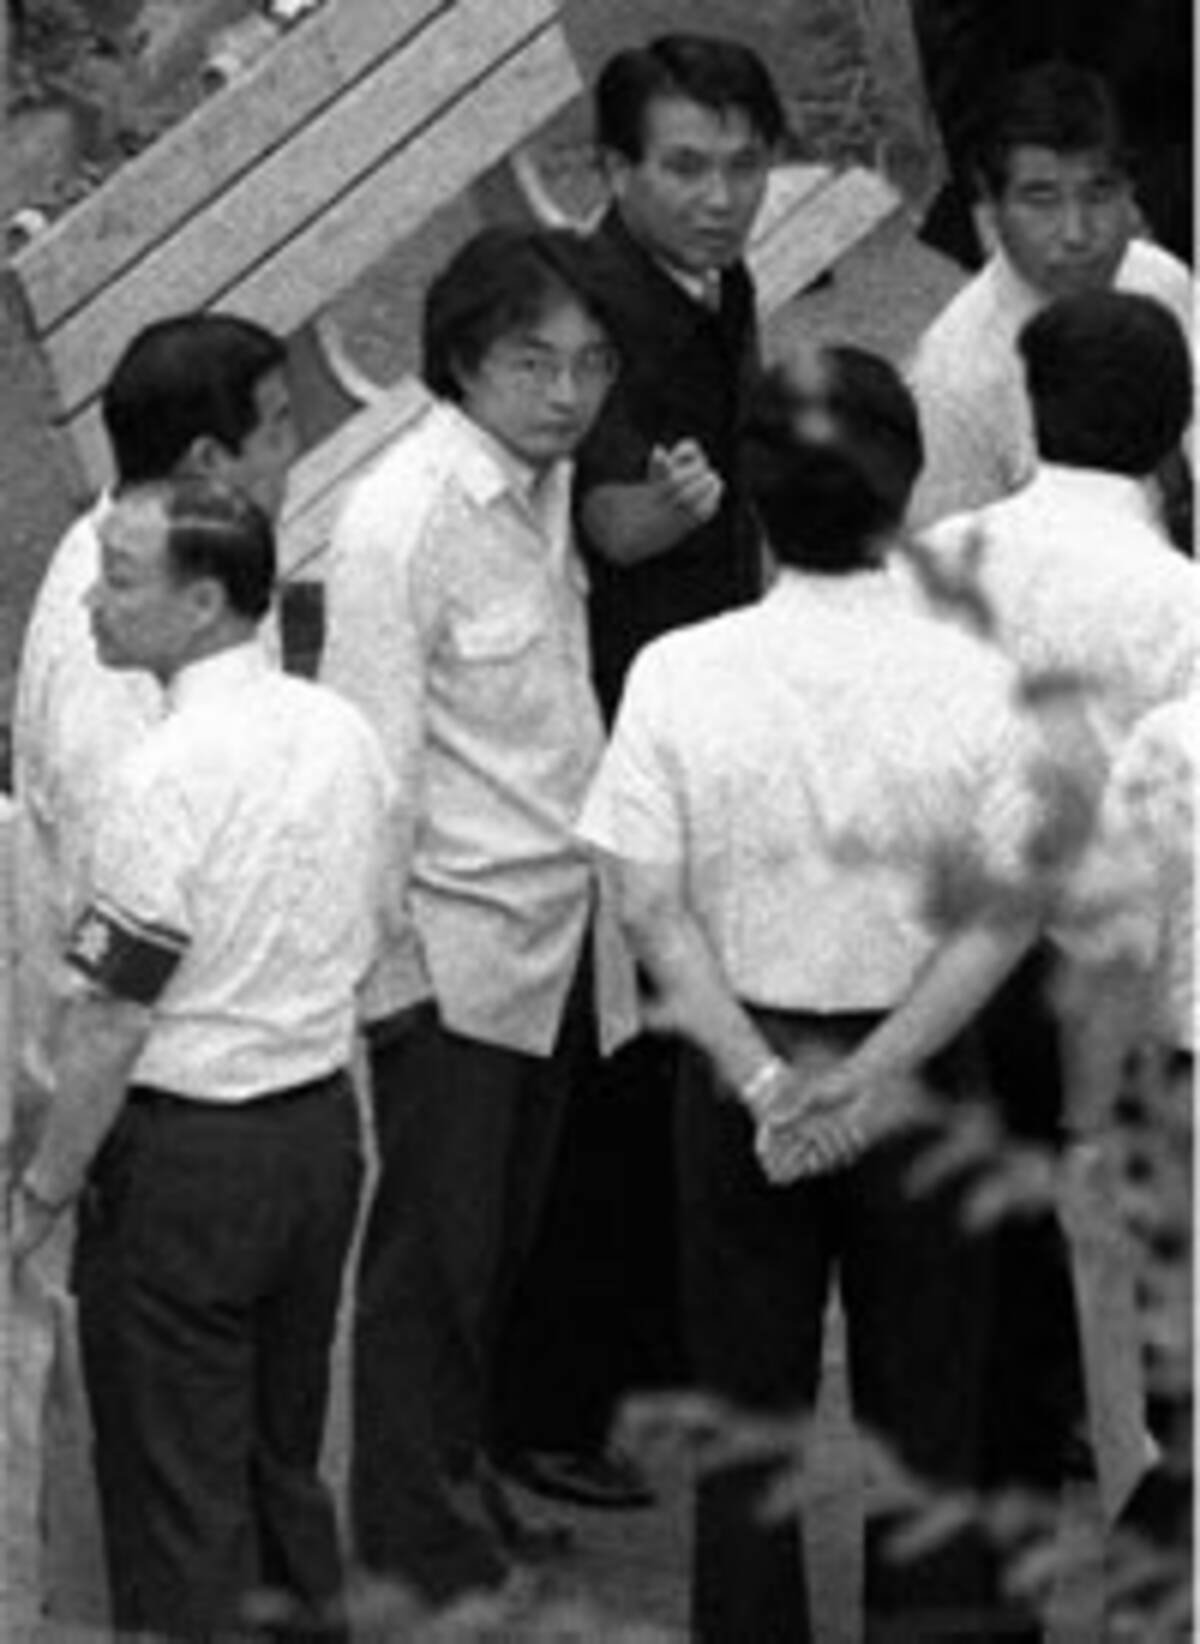 宮崎勤 宅間守らが残した 難題 死刑制度の穴 を見る 08年12月10日 エキサイトニュース